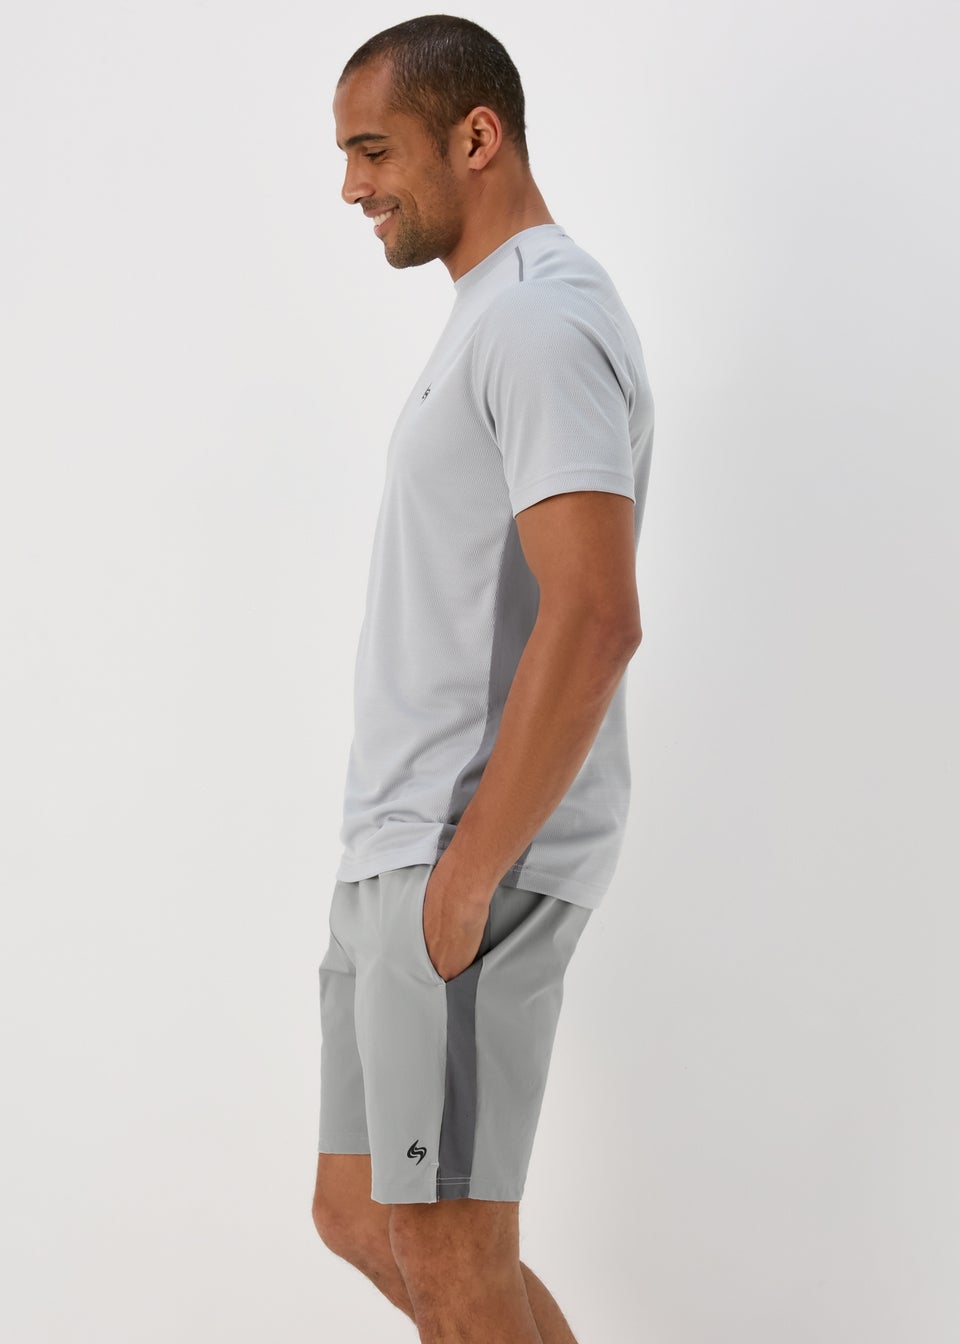 Woven Pique Shorts Grey